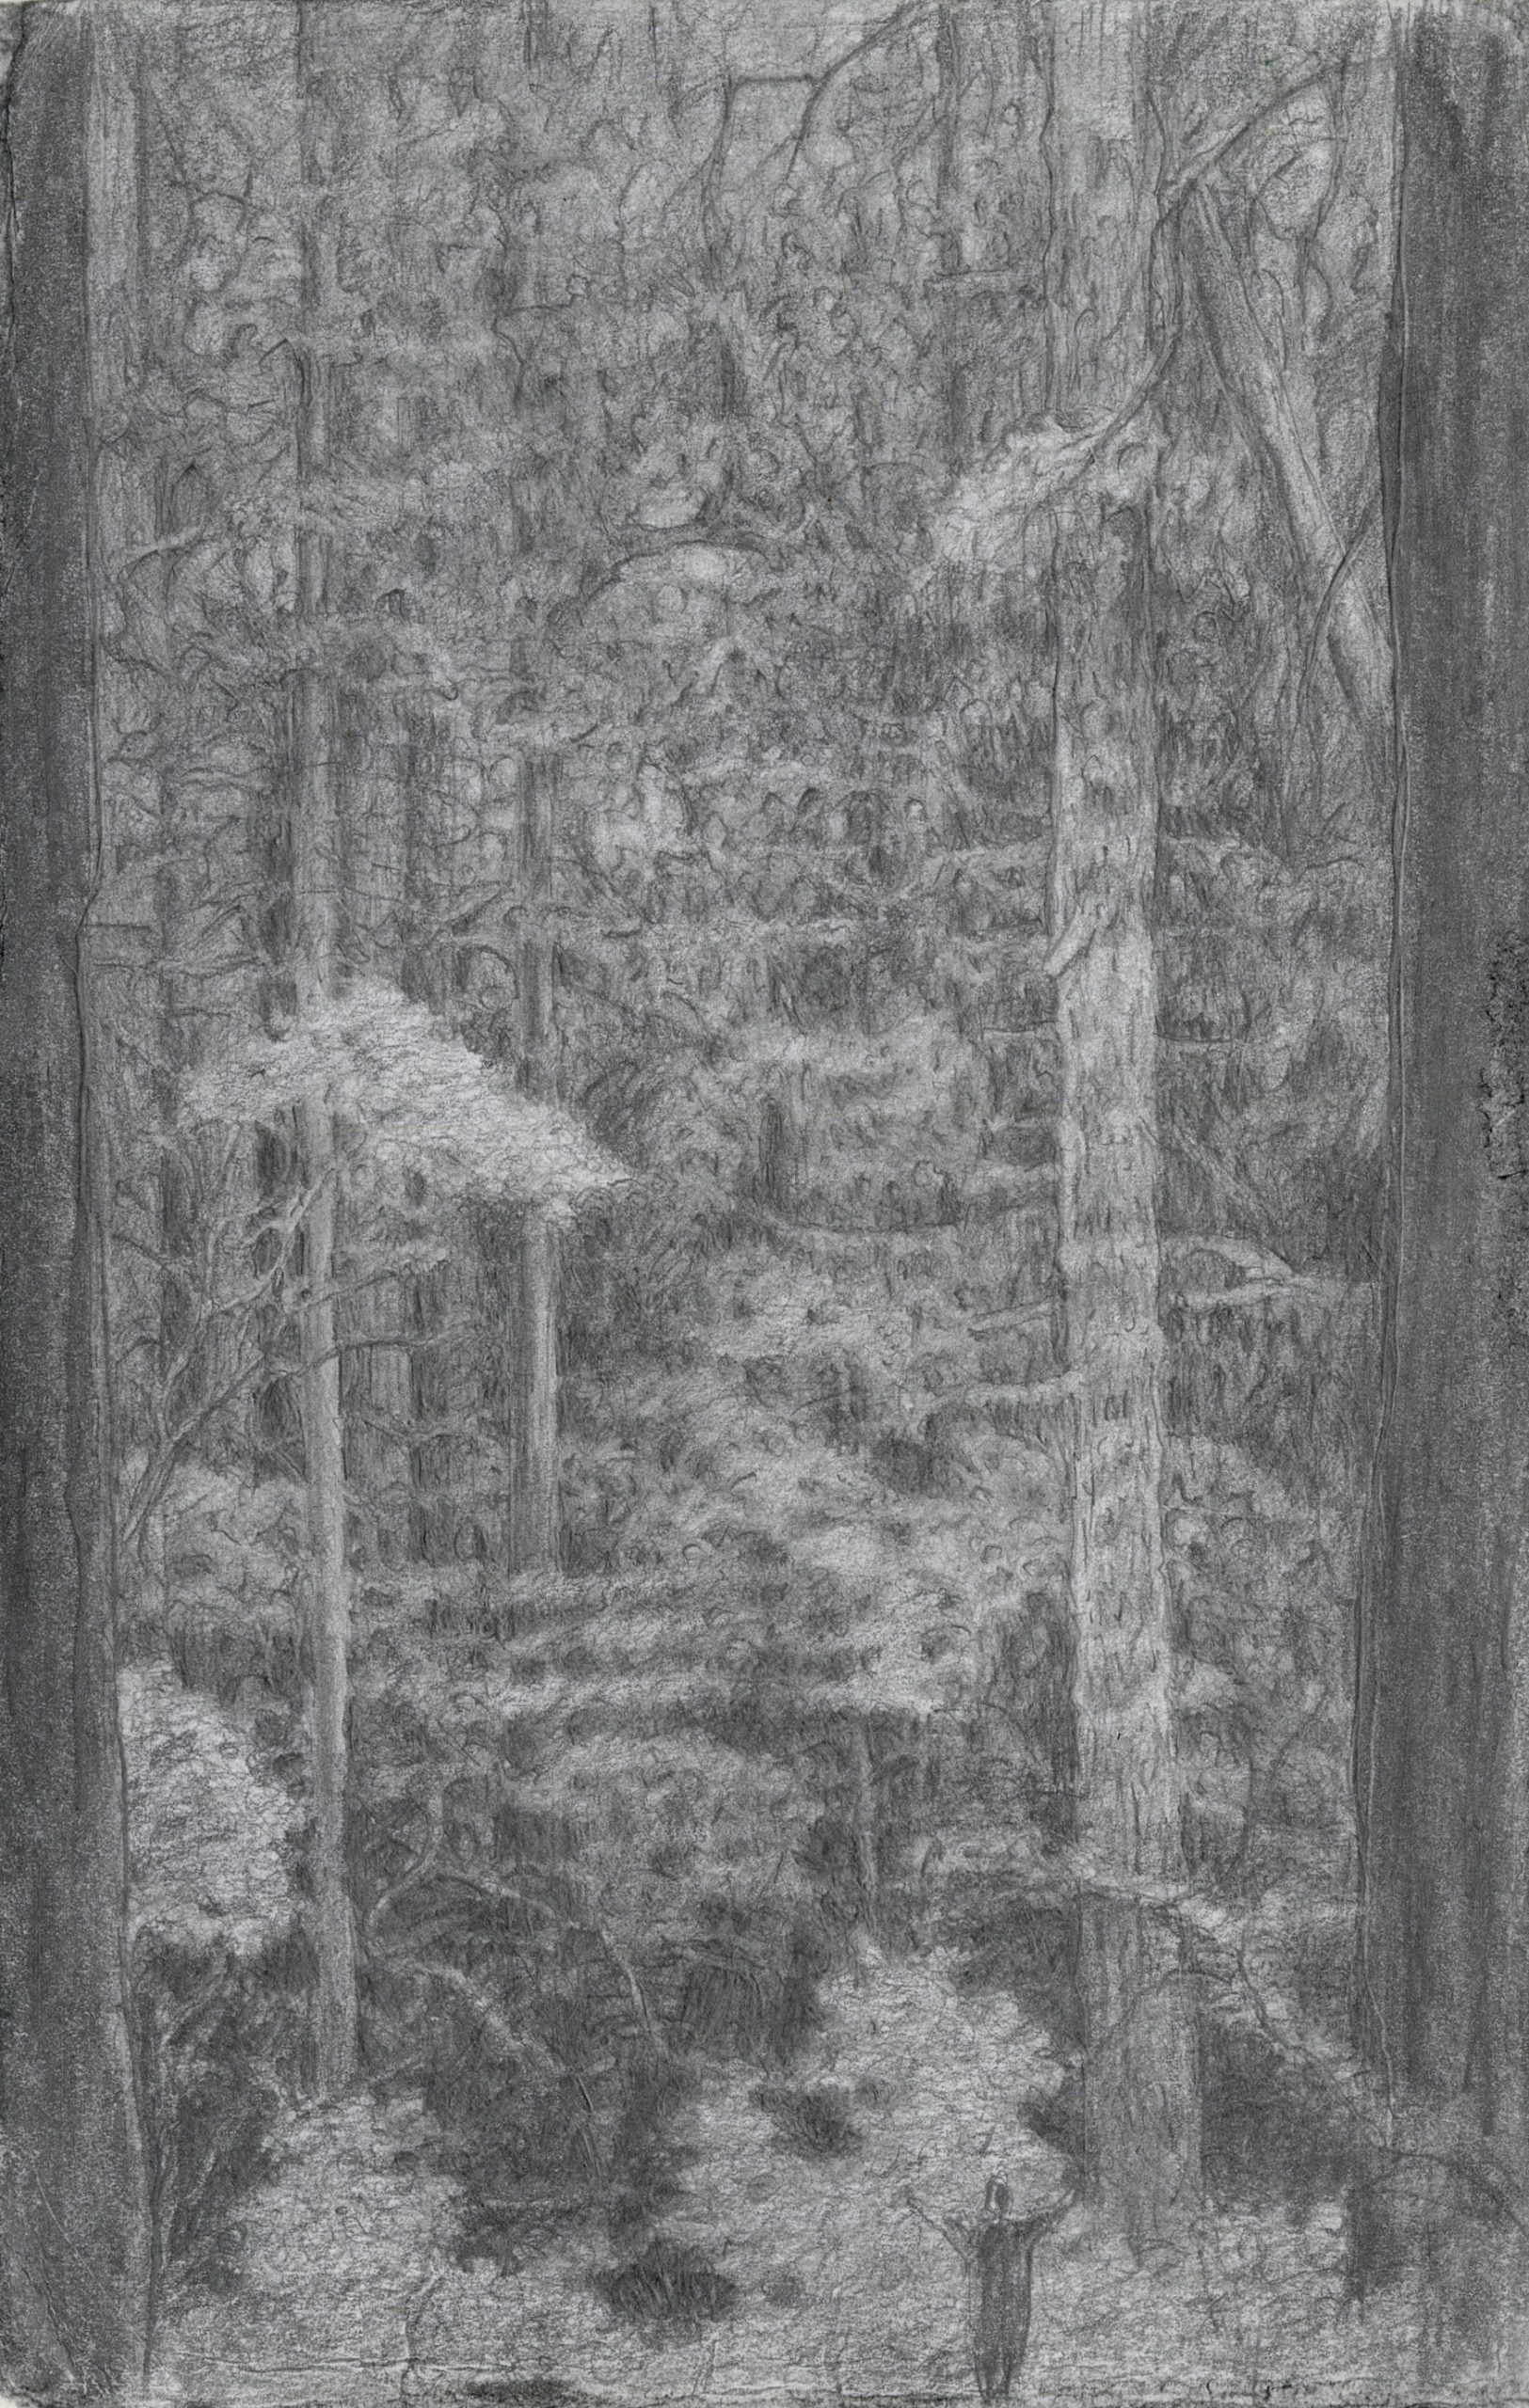 forest primeval